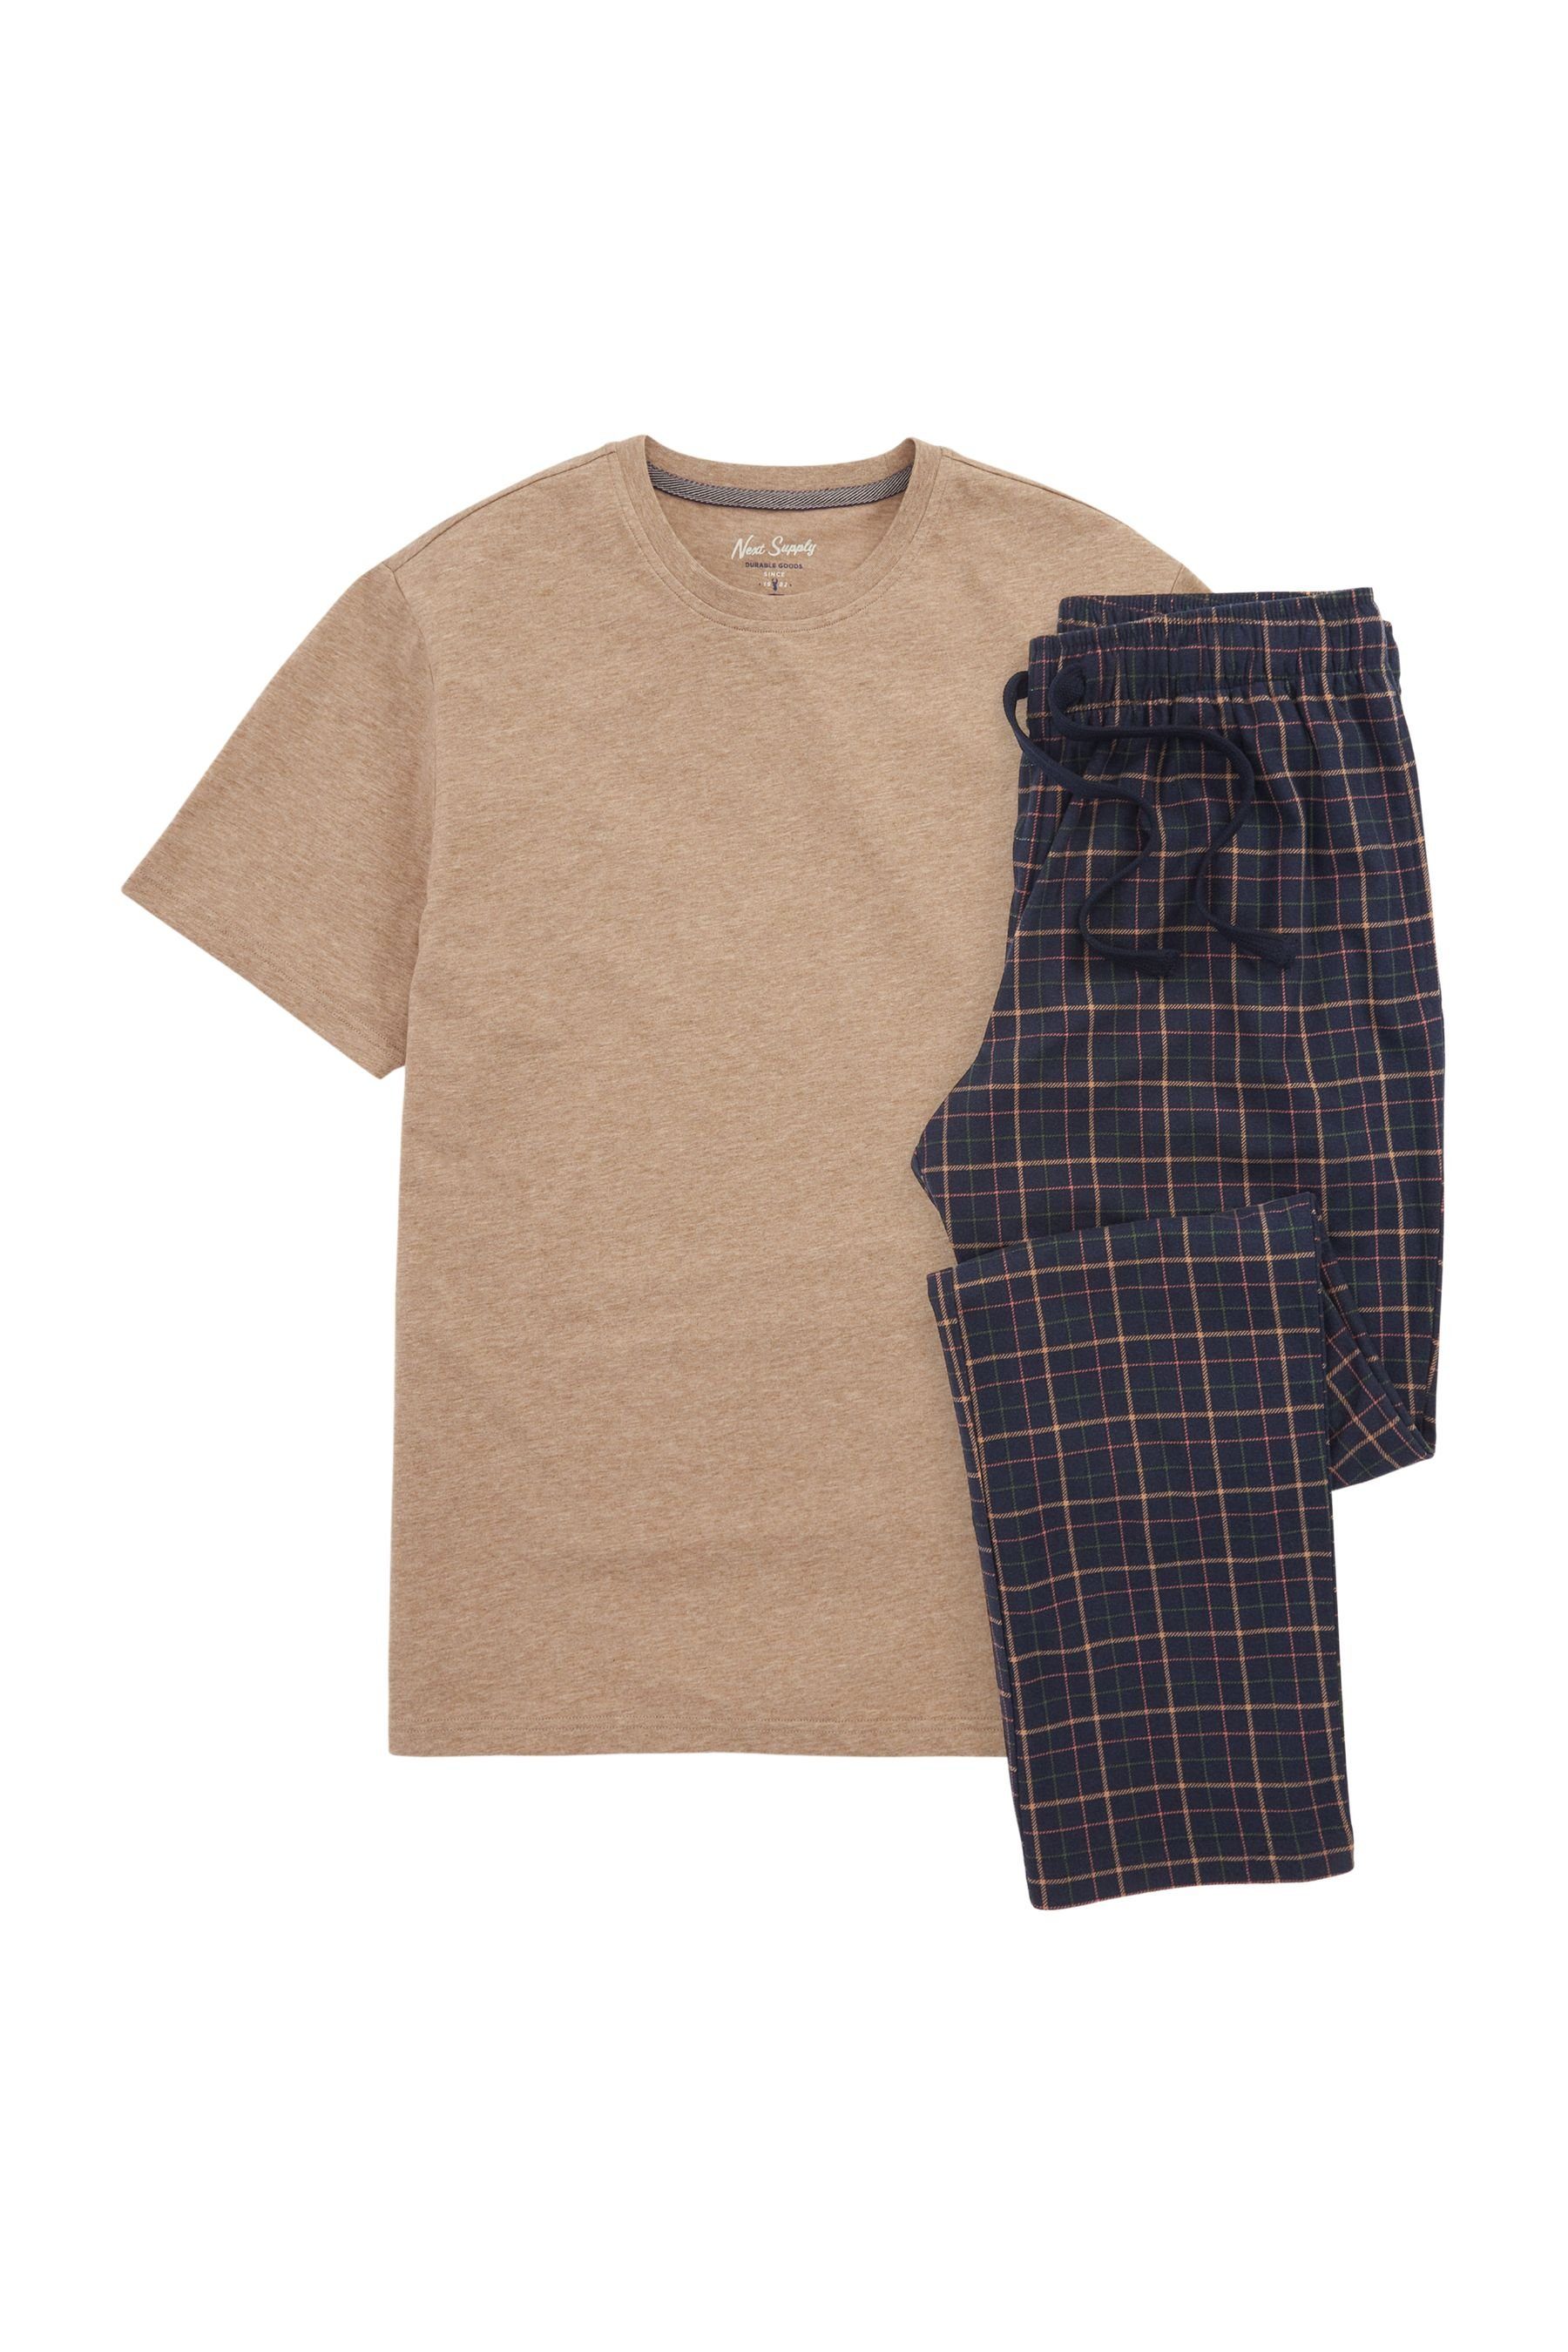 Next Pyjama Bequemer Motionflex Check Blue (2 tlg) Schlafanzug Tan/Navy